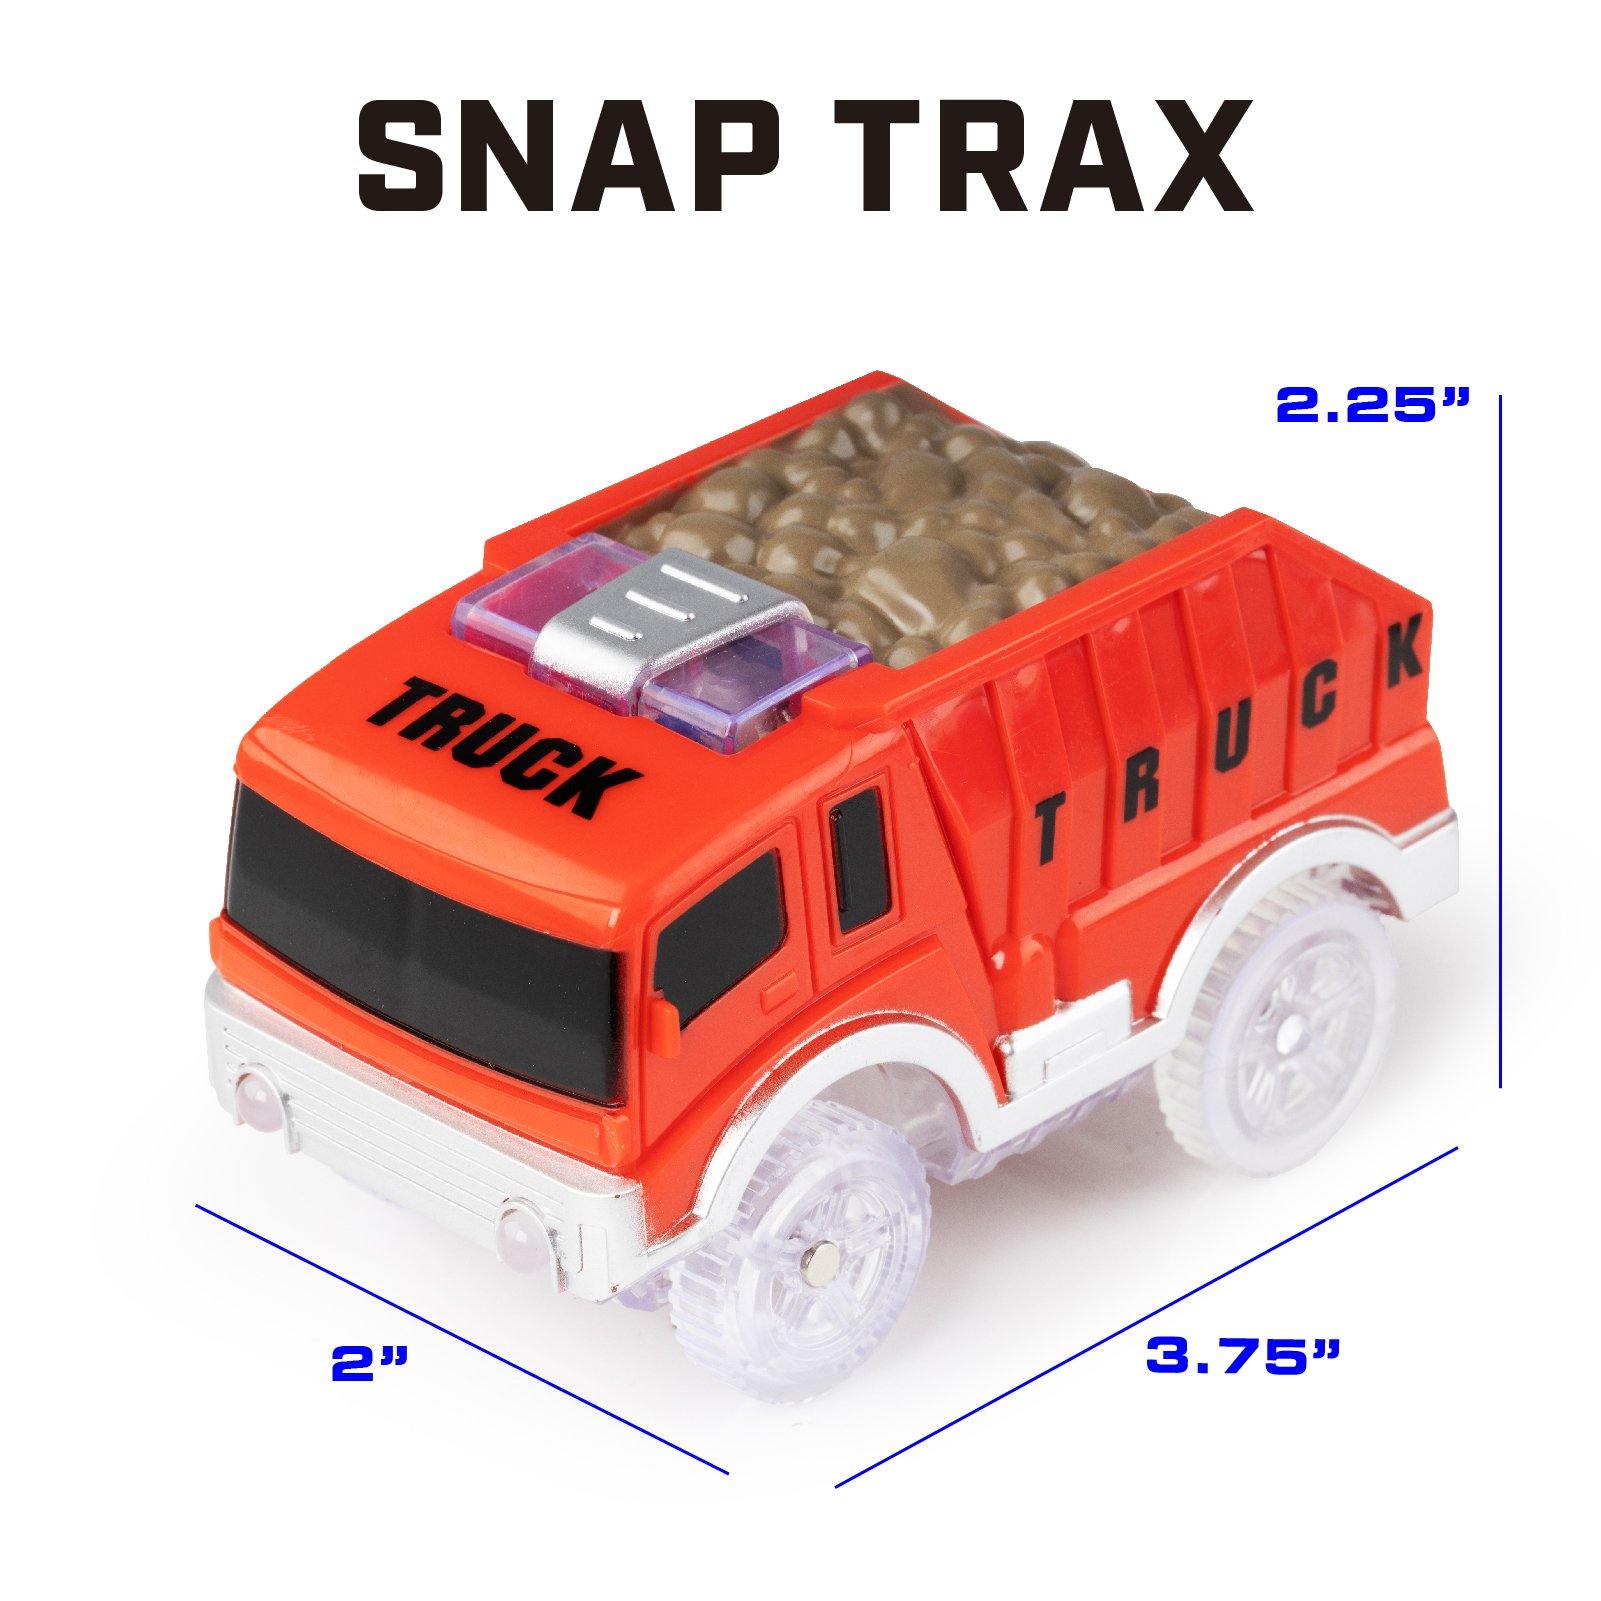 Construction Trax Extra Cars - USA Toyz